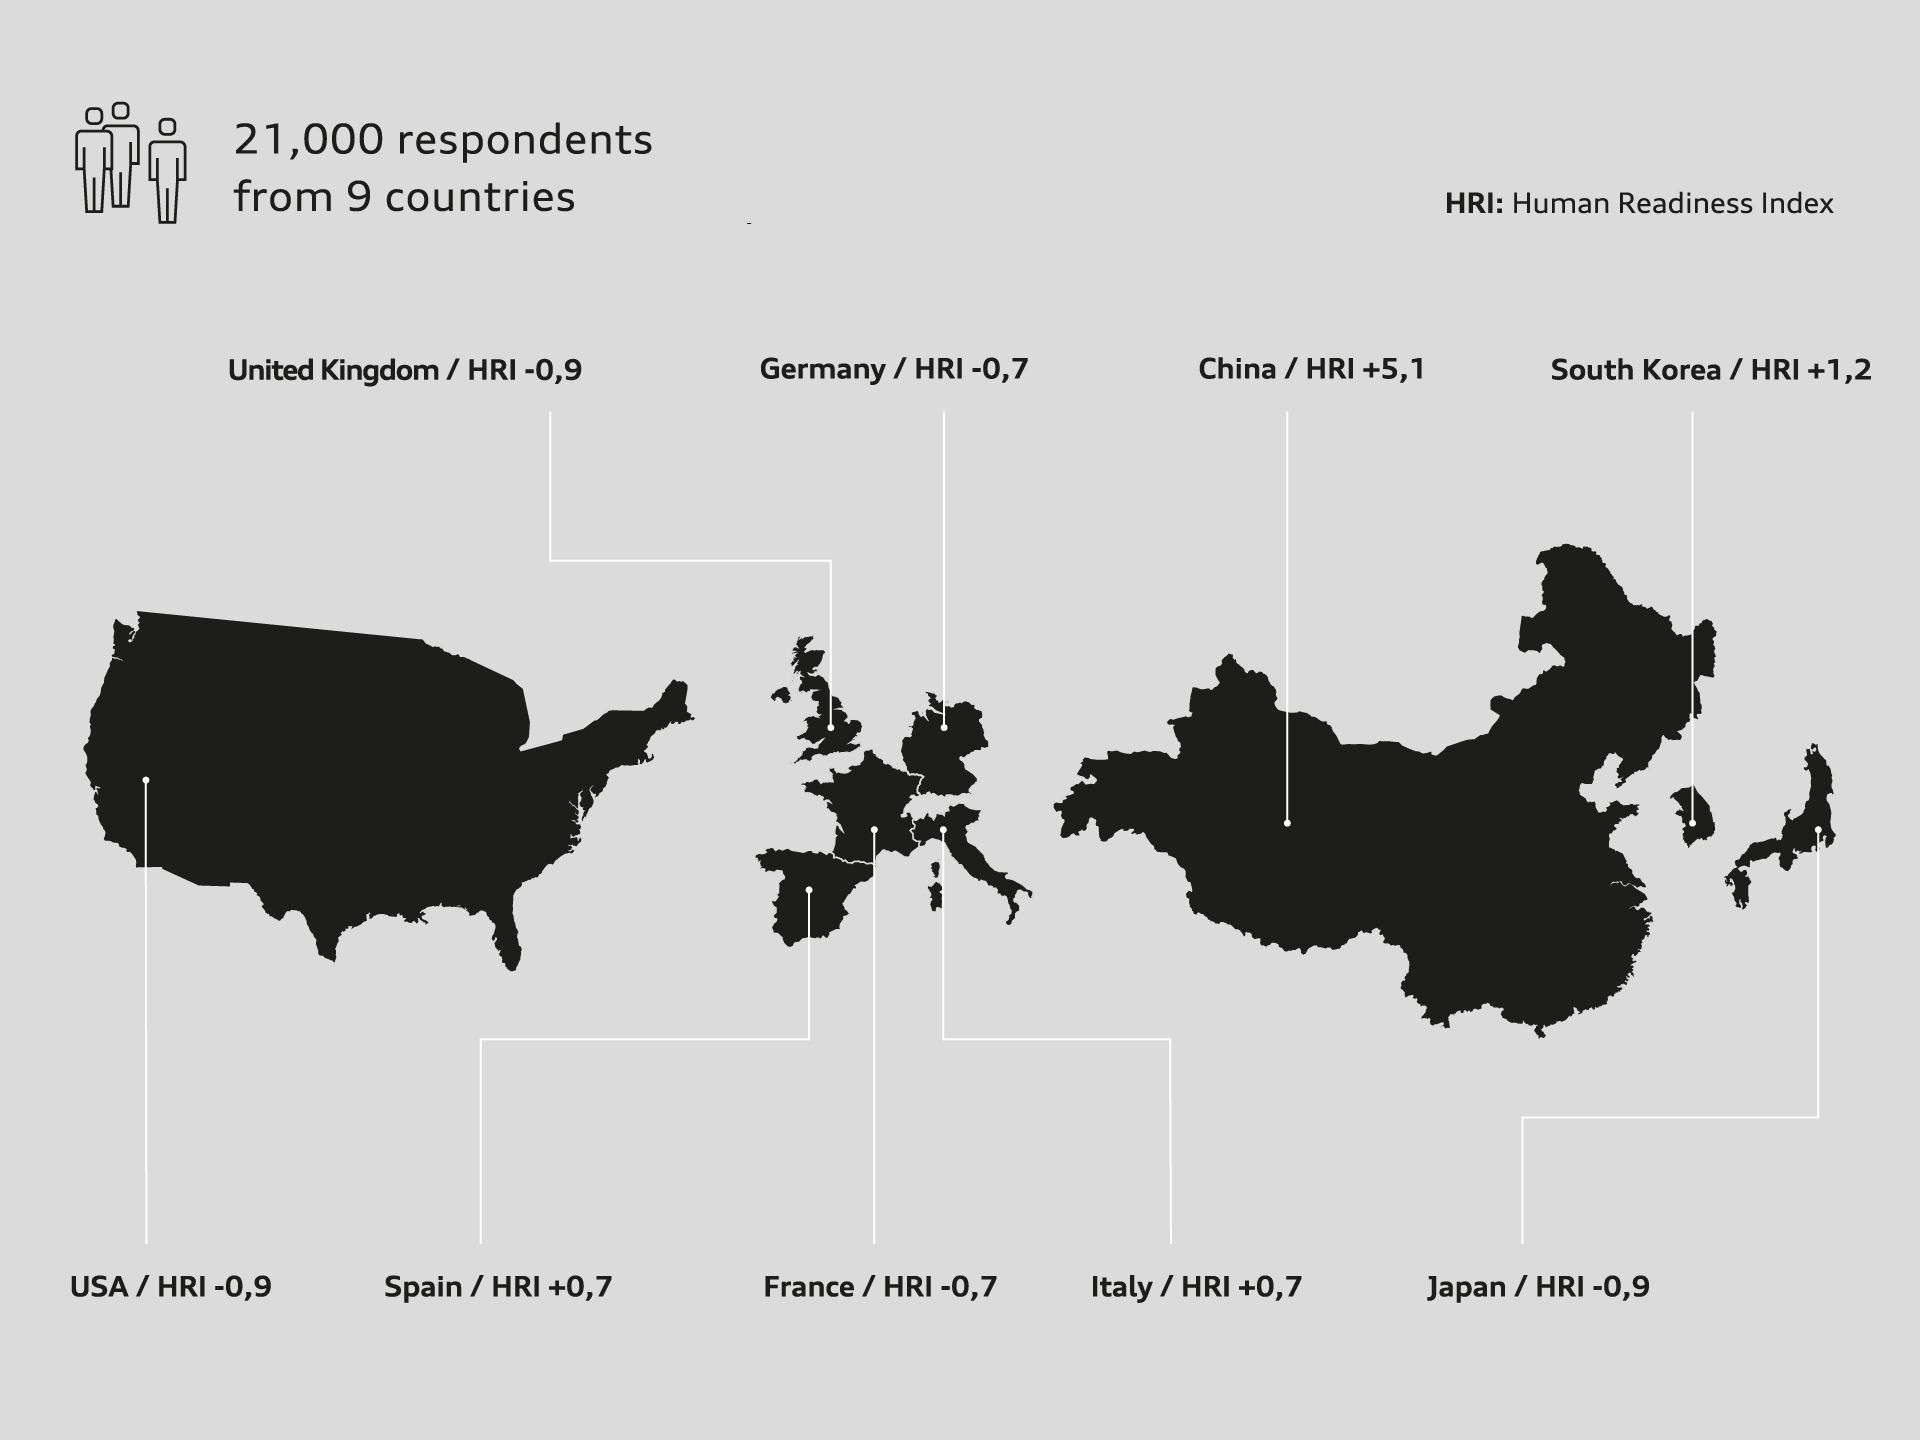 Das Schaubild zeigt die Umrisse diverser Staaten und weist deren Human-Readiness-Index aus. Dieser Index gibt Aufschluss über die Aufgeschlossenheit der Befragten gegenüber dem autonomen Fahren.